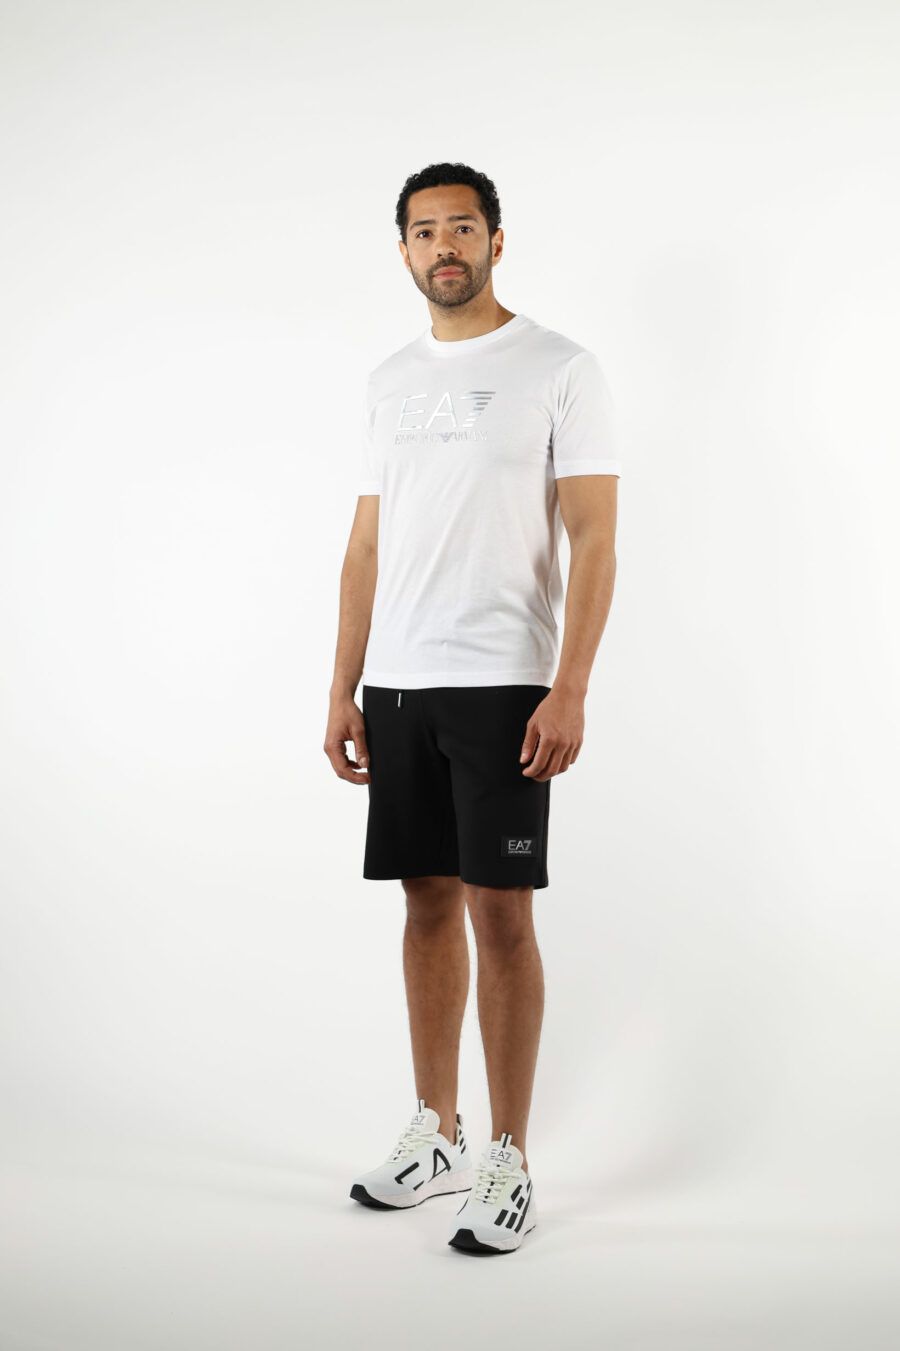 Trainingshose schwarze Shorts mit weißem "lux identity" Minilogo auf schwarzer Platte - 110858